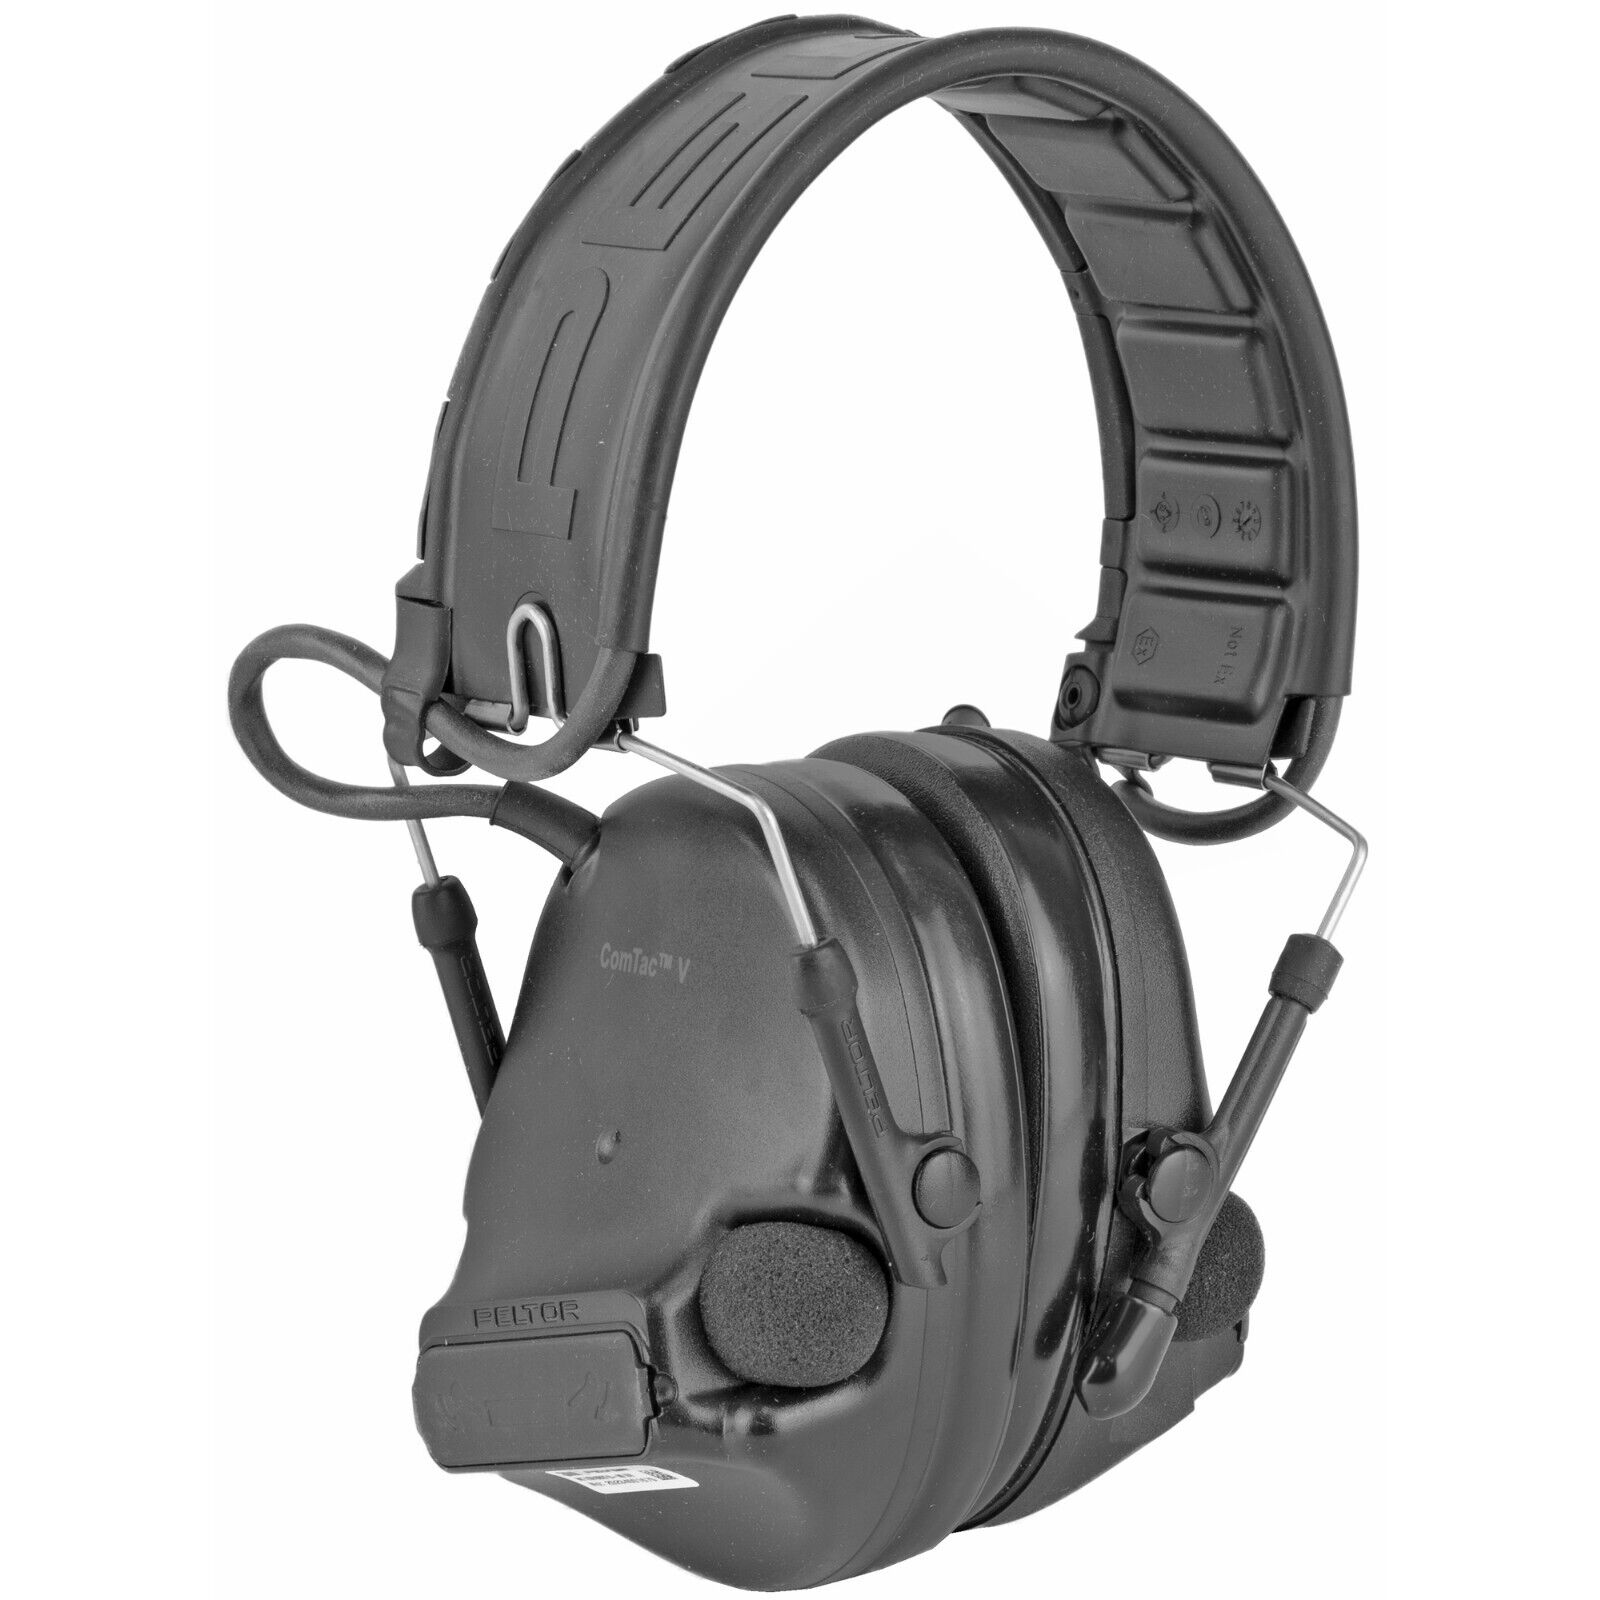 3M Peltor ComTac V Hearing Defender Headset - Black (MT20H682FB-09-SV)